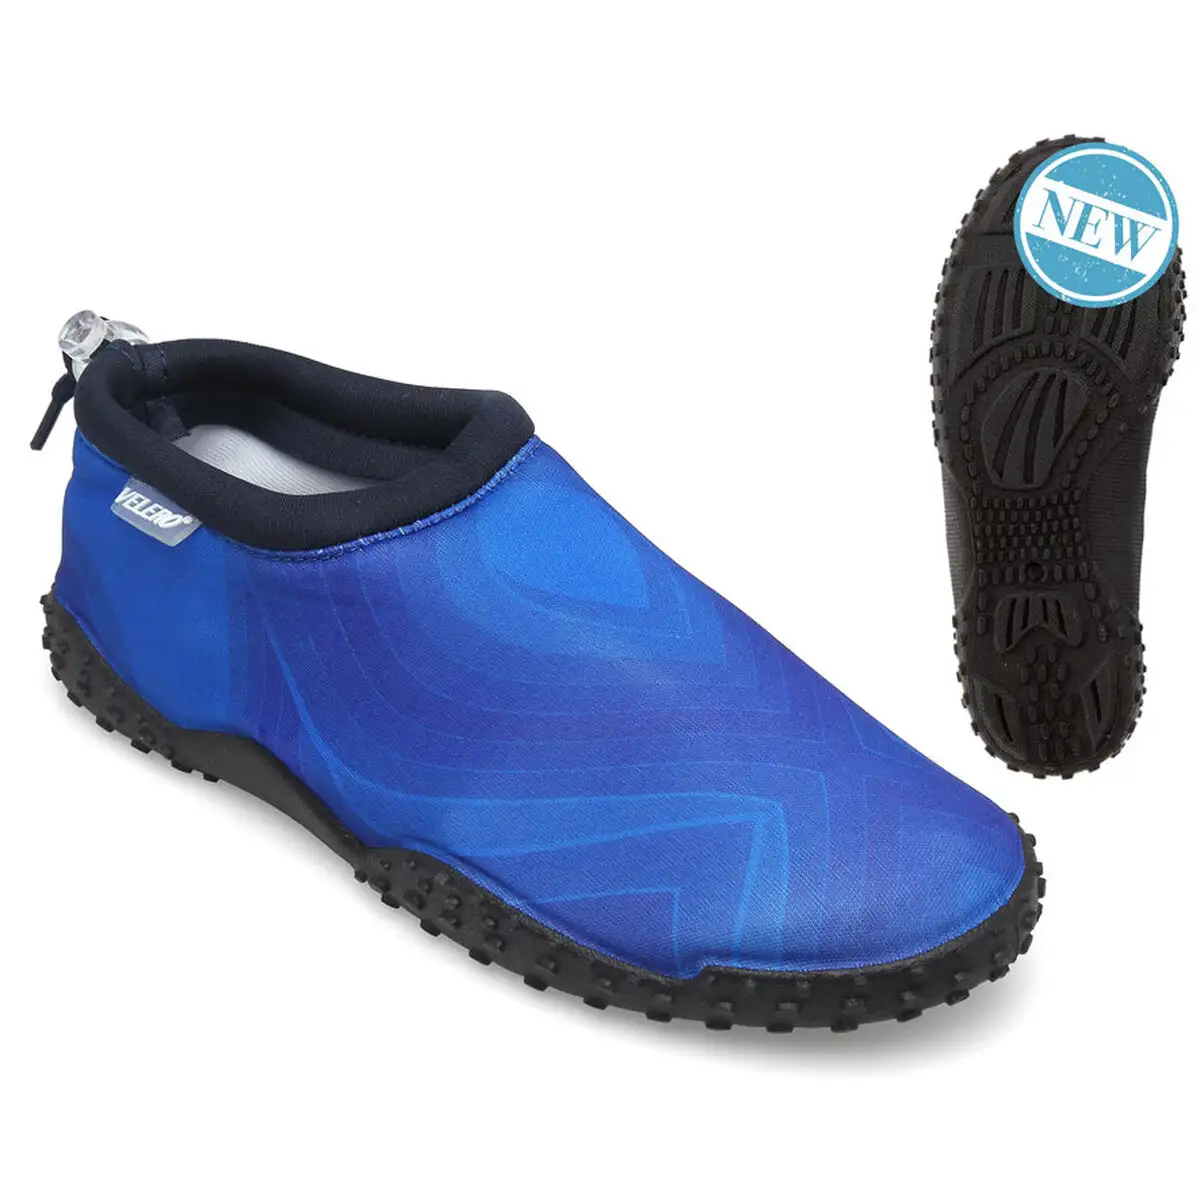 Chaussures aquatiques pour enfants bleu_4502. DIAYTAR SENEGAL - Votre Plateforme Shopping, Votre Choix Éclairé. Explorez nos offres et choisissez des articles de qualité qui reflètent votre style et vos valeurs.